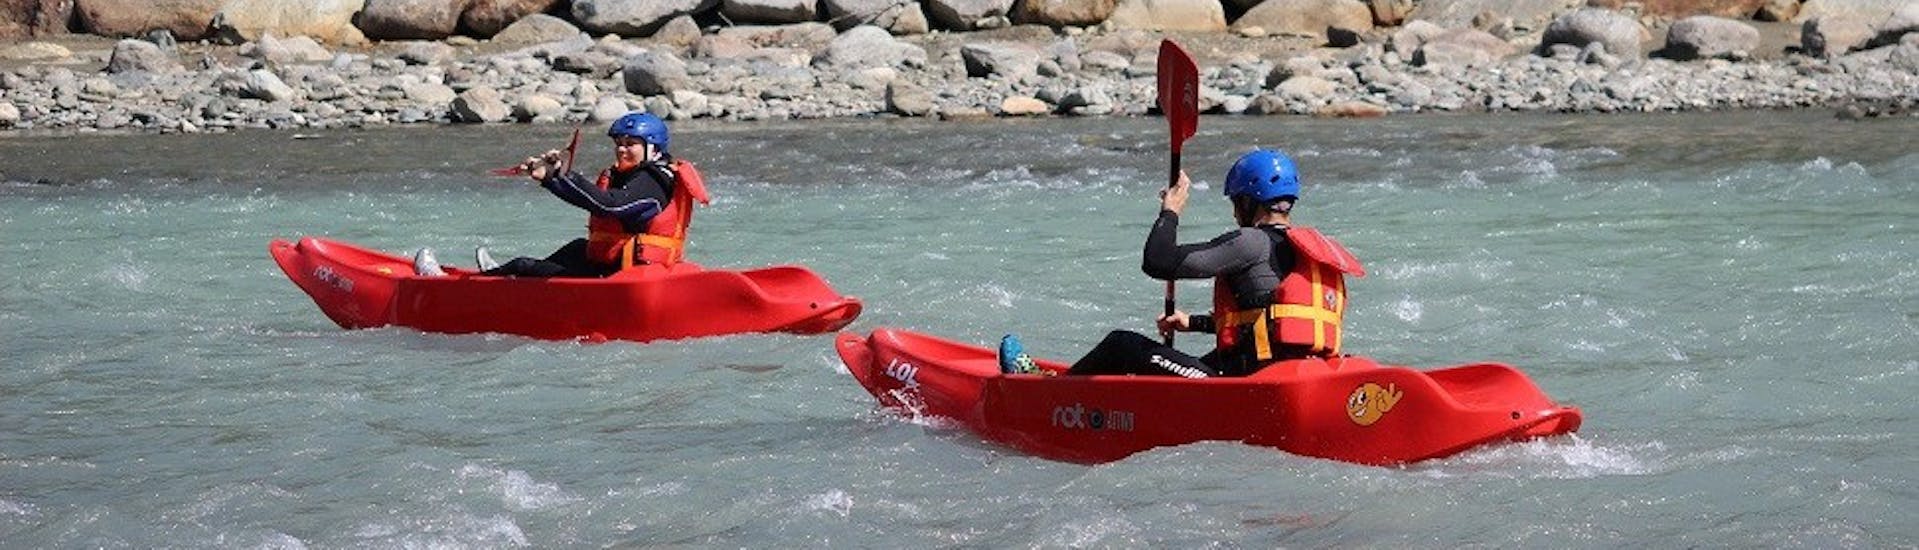 Sportliche Kayak & Kanu-Tour in Castione Andevenno - Adda.